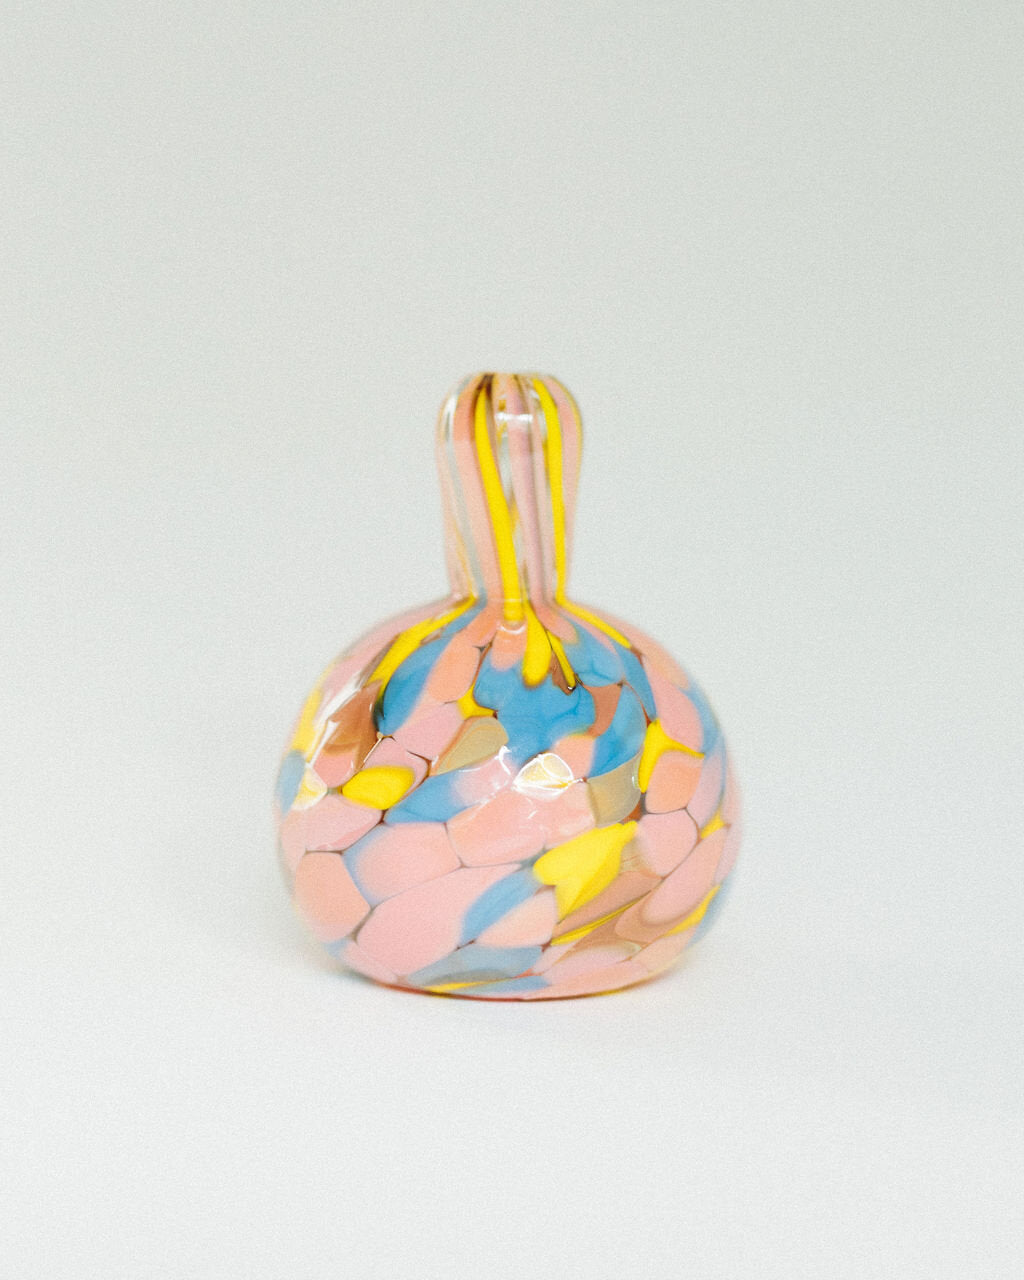 Glass Blown Mini Vases